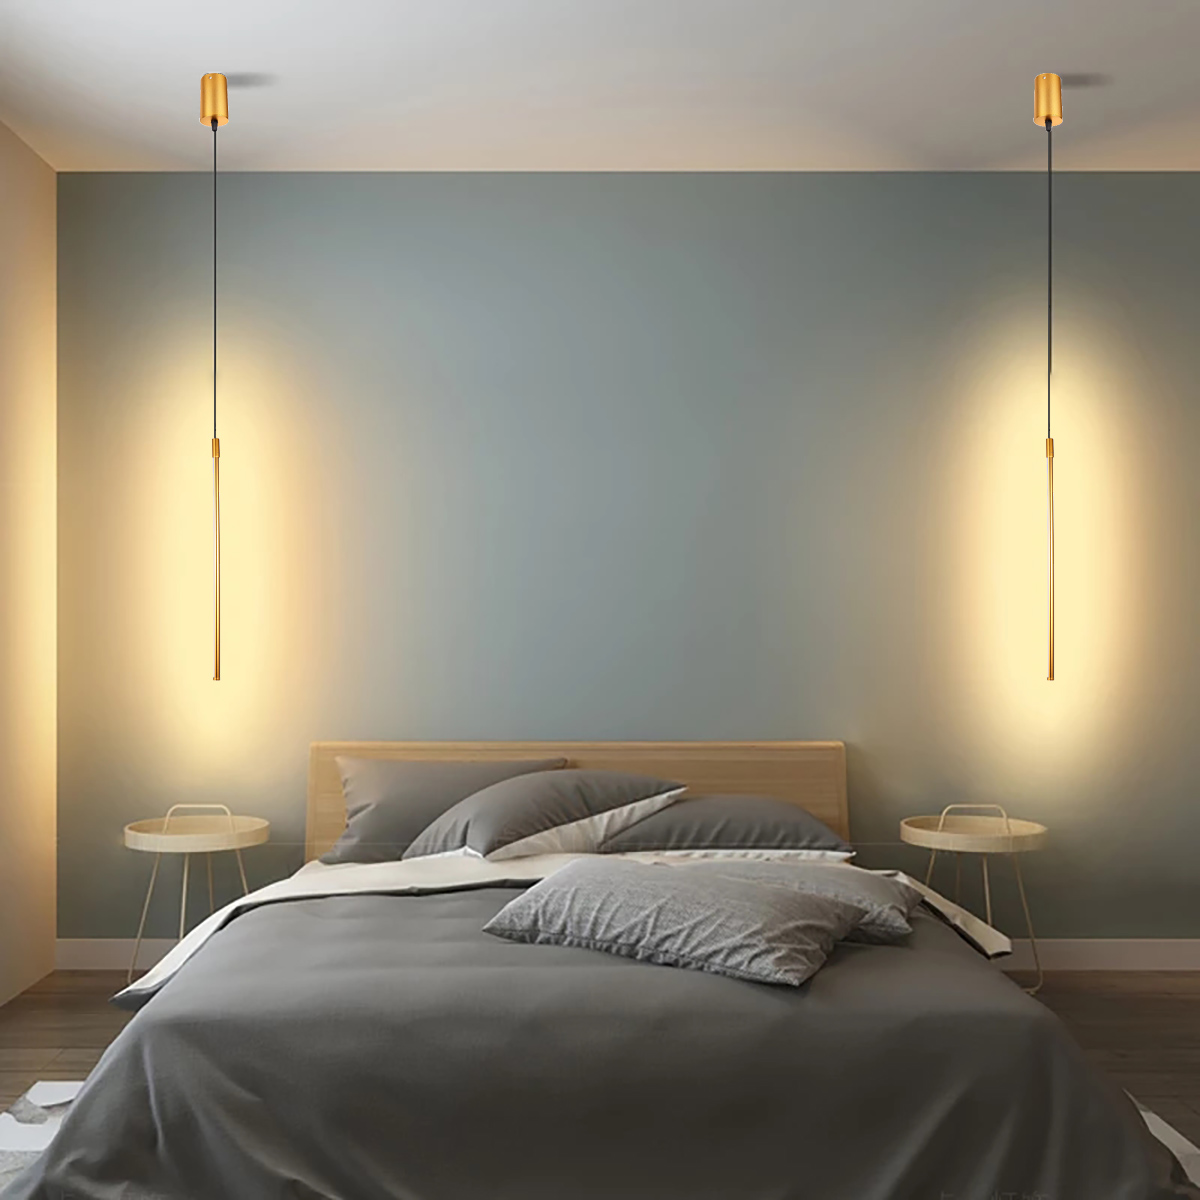 6080100cm-Line-Led-Pendant-Lights-Minimalist-Modern-Warm-White-3000K-Ceiling-Lights-For-Living-Room--1937897-1